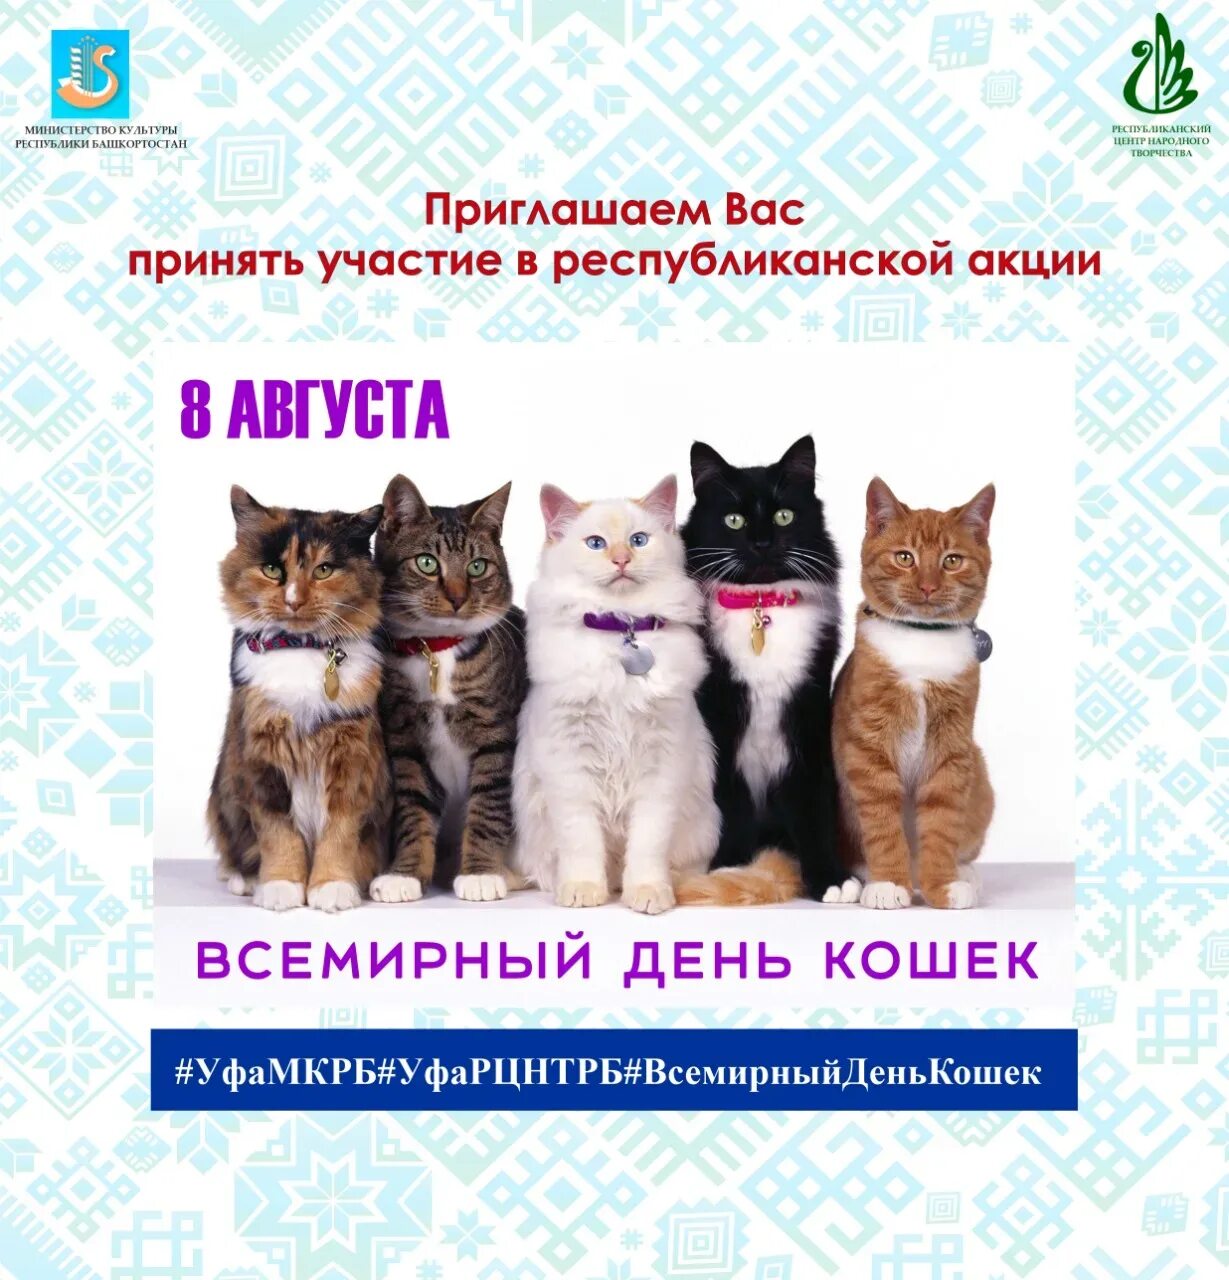 Всемирный день кошек. Всемирный день кошек 8 августа. Всемирный день кошек открытки. Всемирный день кошек 8 августа открытки.